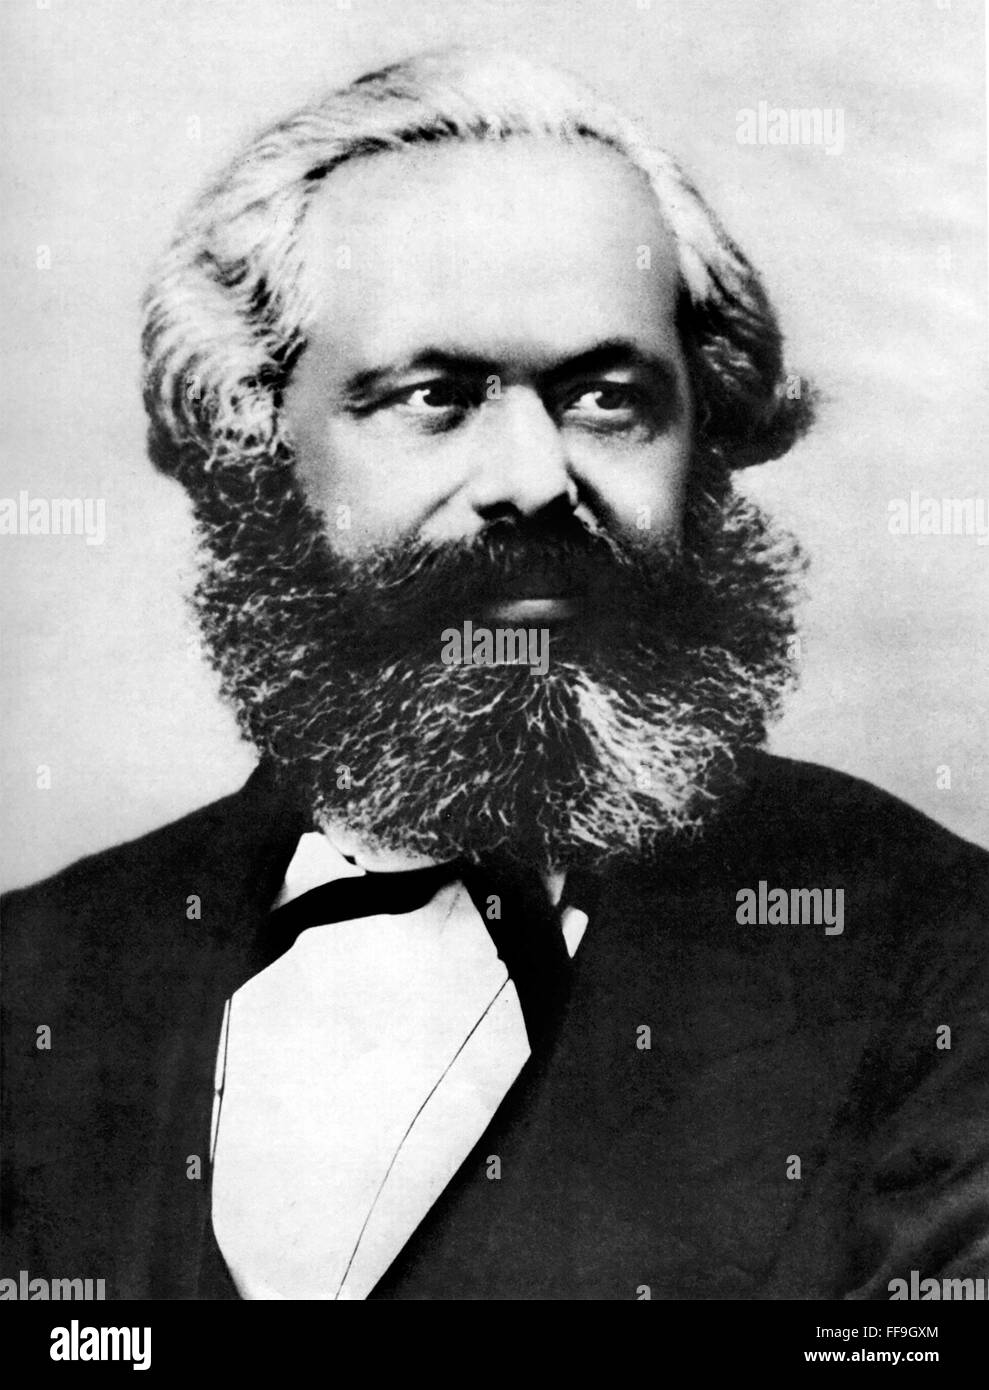 Karl Marx, geboren sozialistische Philosoph, Ökonom und Schriftsteller. Foto c.1867 Stockfoto